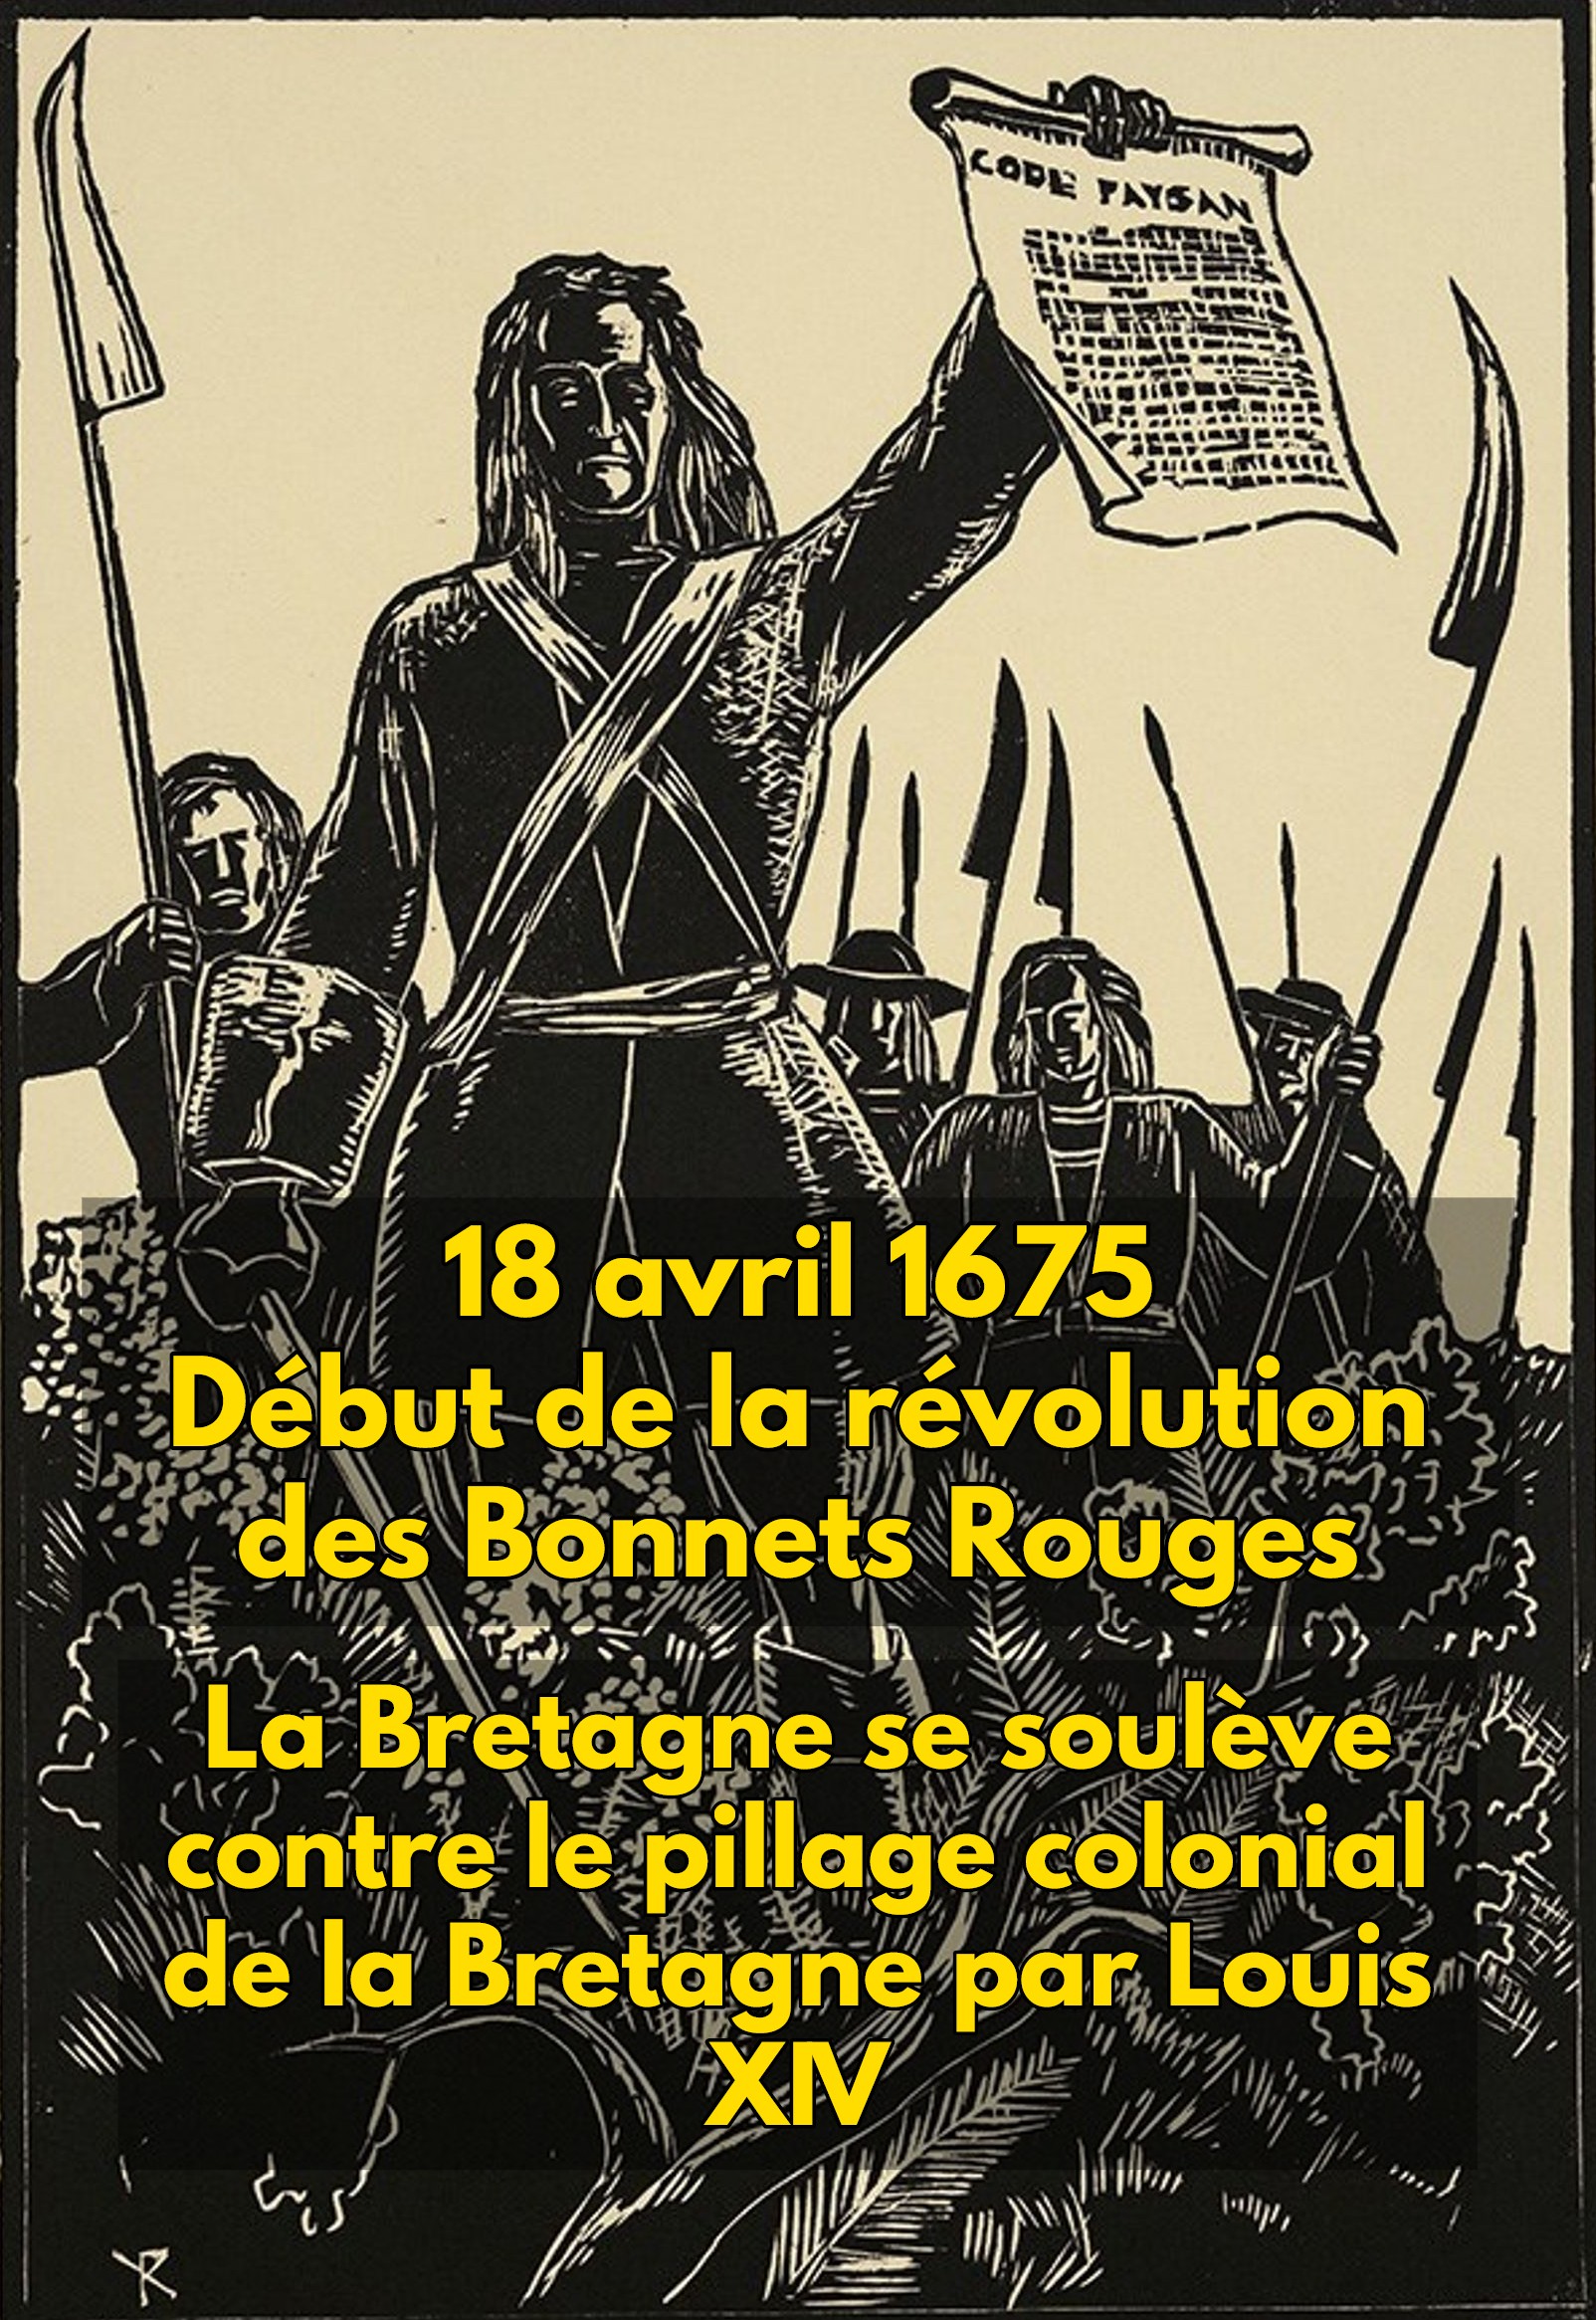 Ephéméride national breton : 18 avril 1675, début de la révolution des Bonnets Rouges